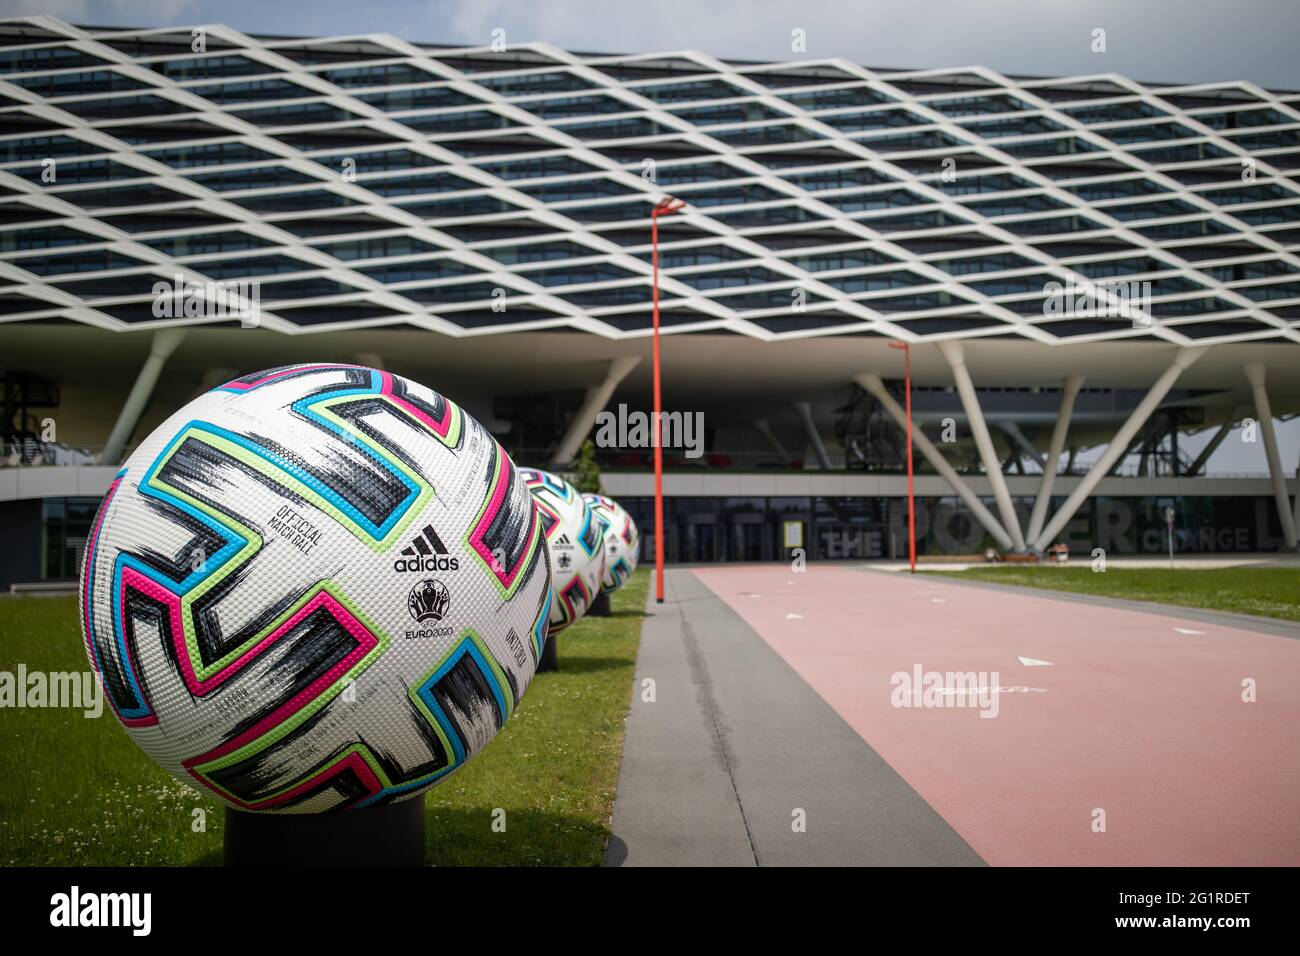 07 giugno 2021, Bavaria, Herzogenaurach: Palle ufficiali di grandi  dimensioni 'Uniforia' di EURO 2020 stand di fronte all'edificio per uffici ' Arena' presso la sede del produttore di articoli sportivi adidas. La  nazionale